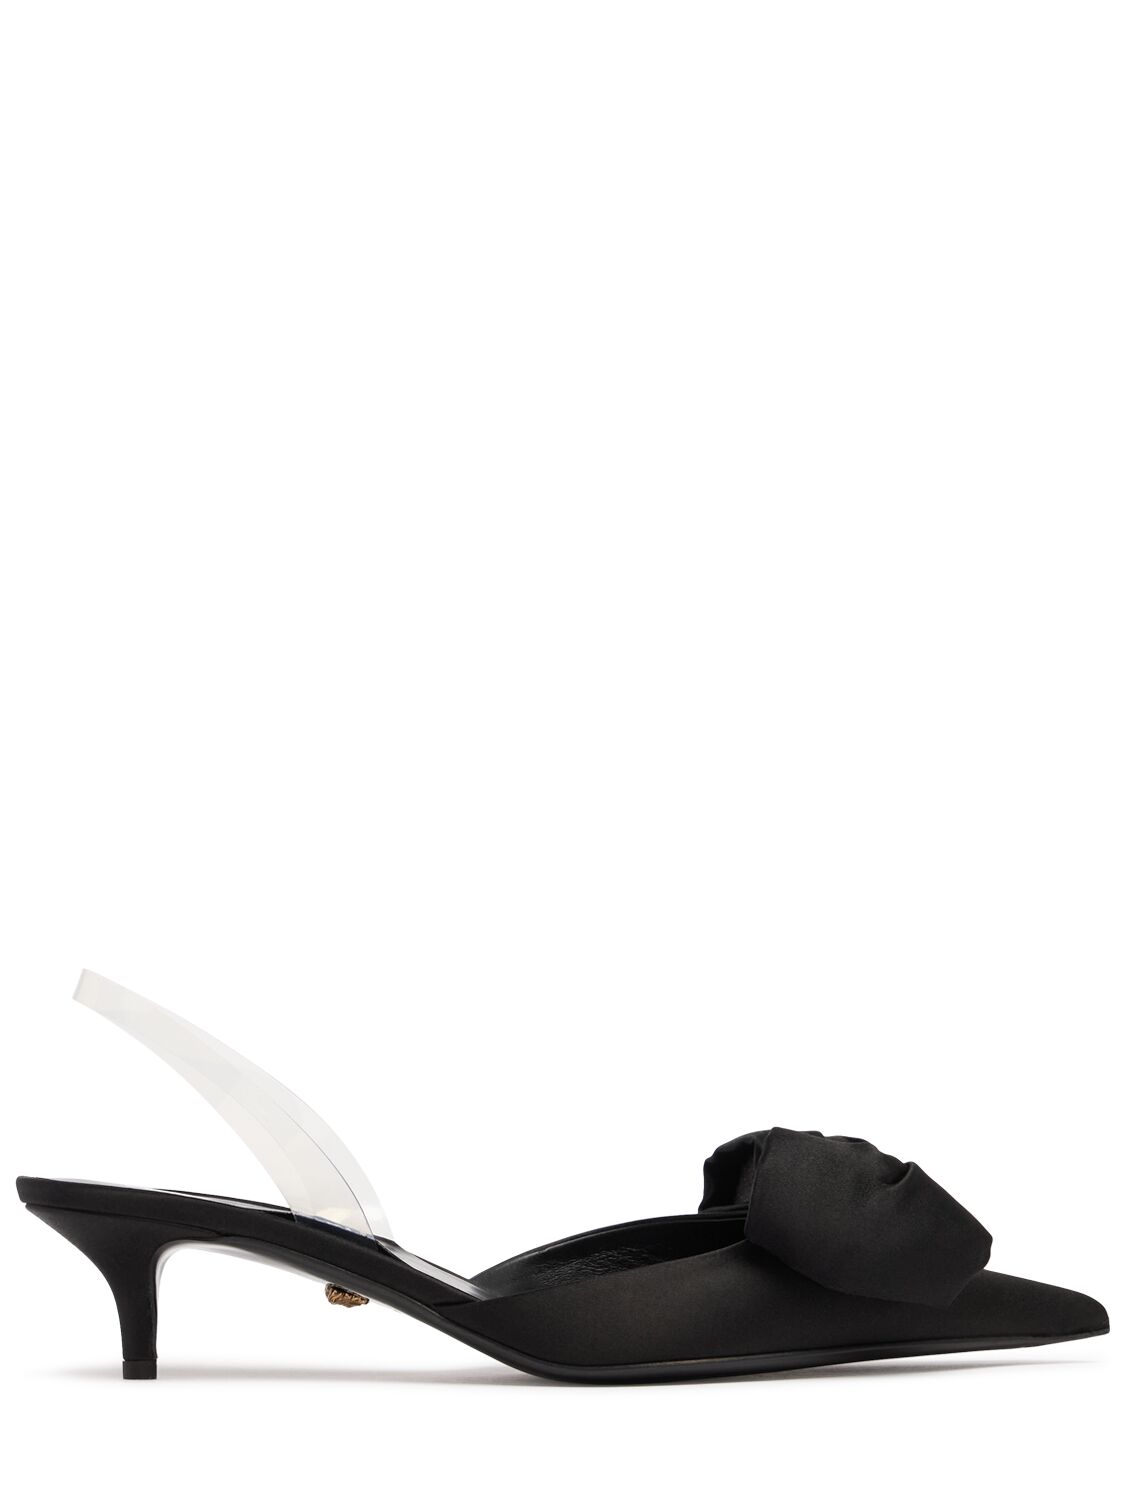 Versace 45mm Satin Heels In Black